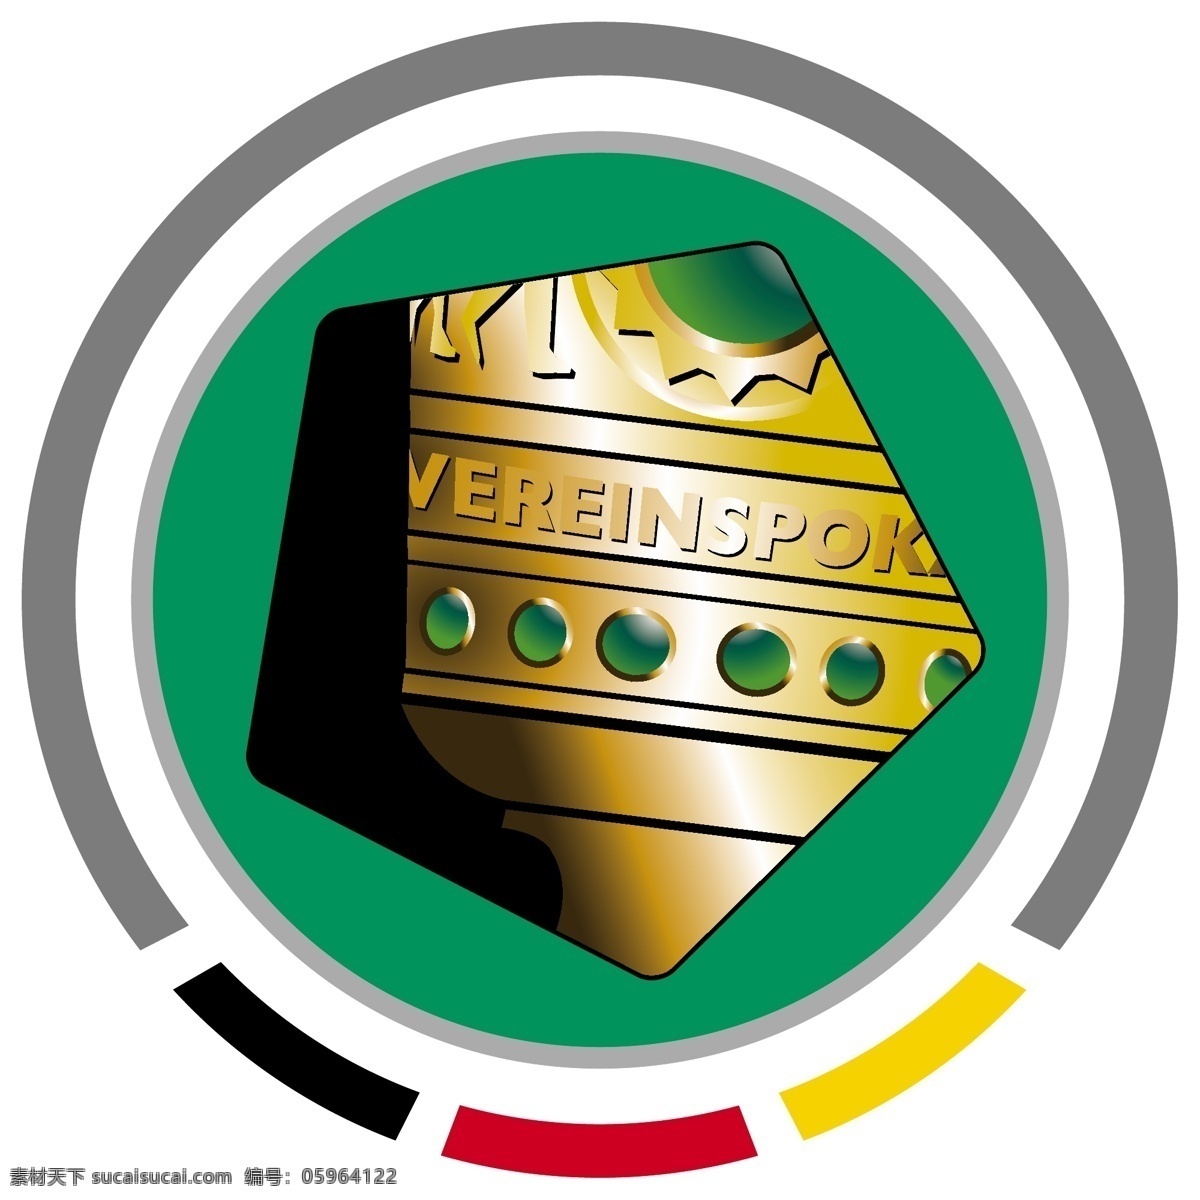 德国杯 徽标 logo设计 比赛 德国 欧洲 足球 杯赛 足协杯 dfb pokal 赛事徽标 矢量图